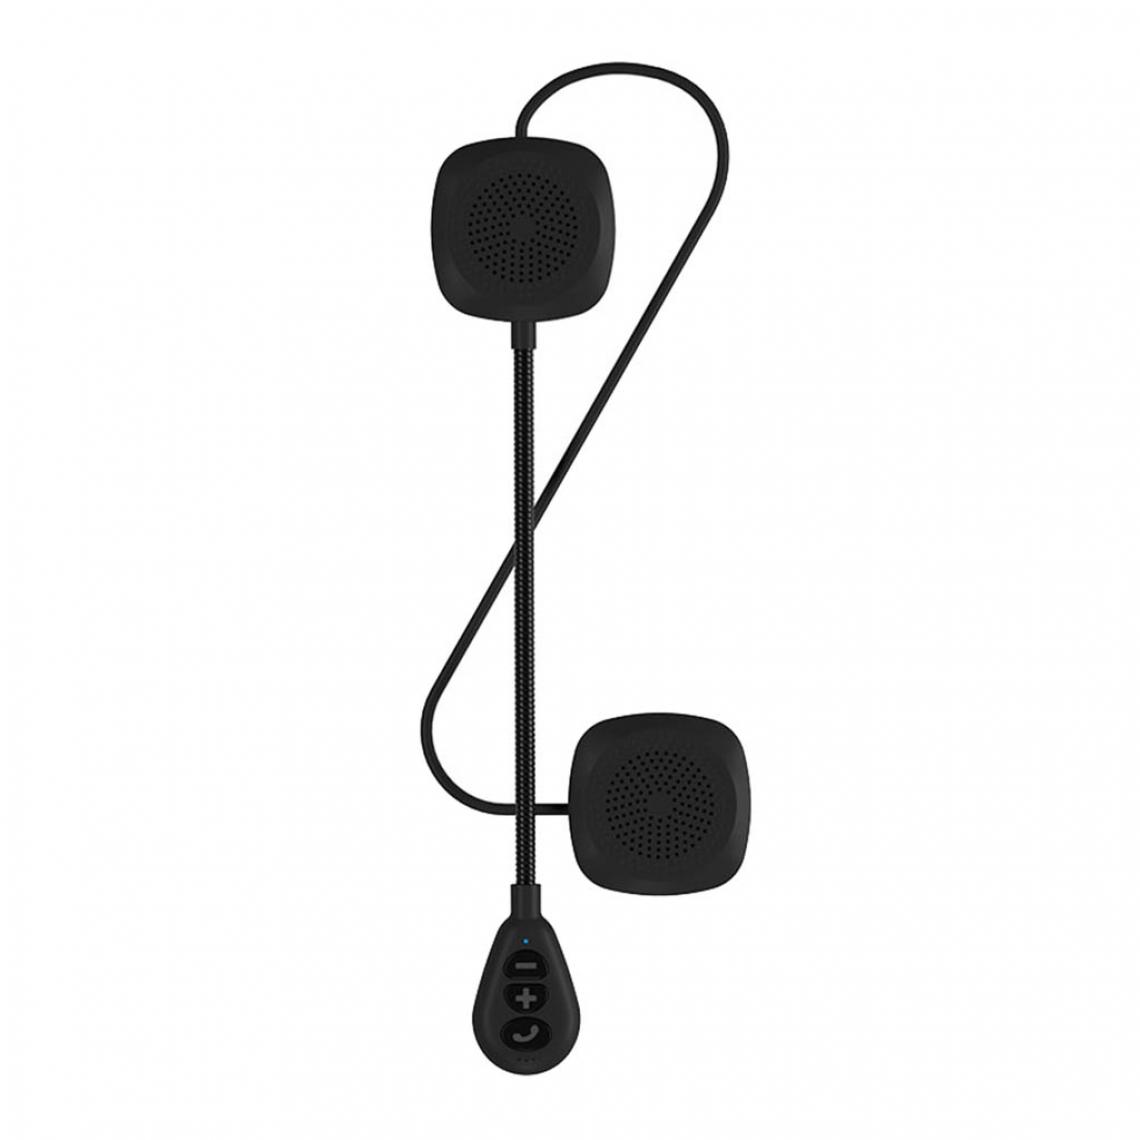 marque generique - Interphone Interphone Moto 5.0Helmet Haut-parleur Casque Haut-parleur - Accessoires Mobilité électrique